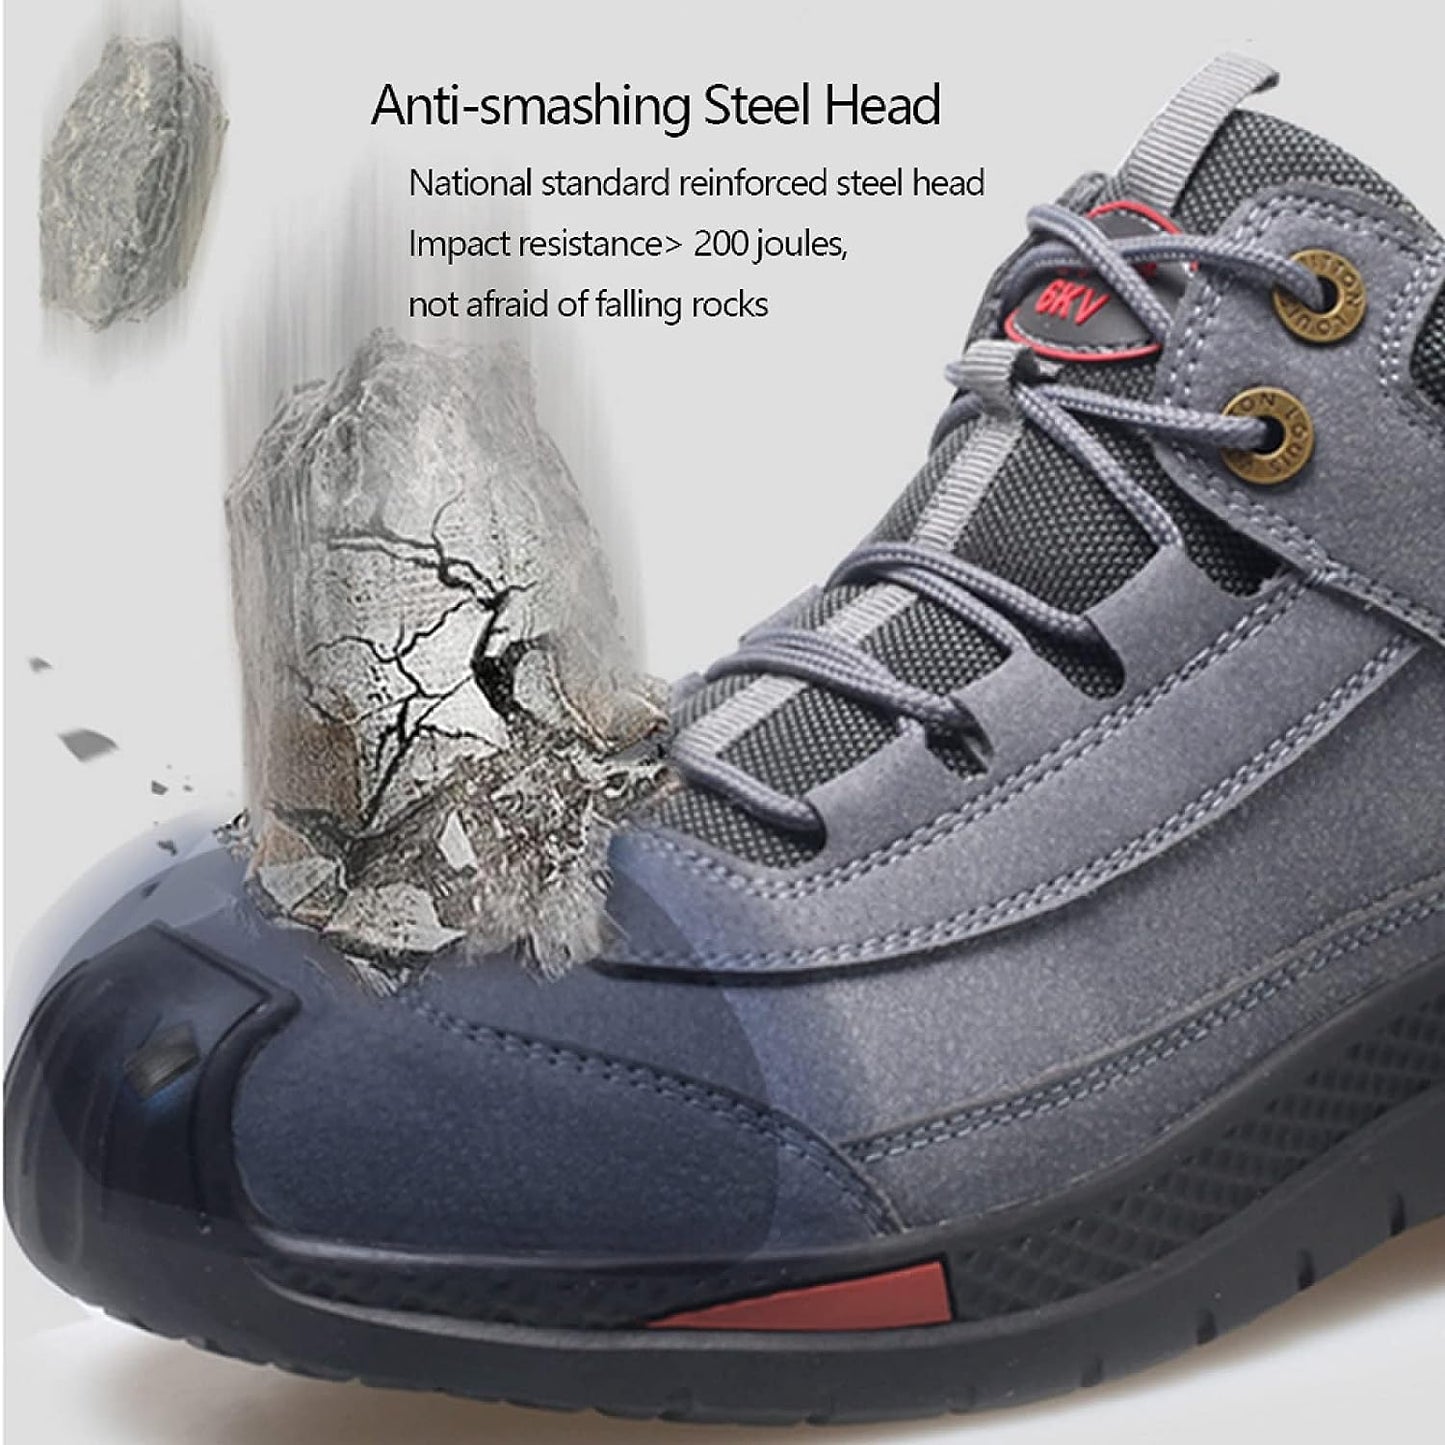 Samm SafetyStride - Waterproof safety shoes